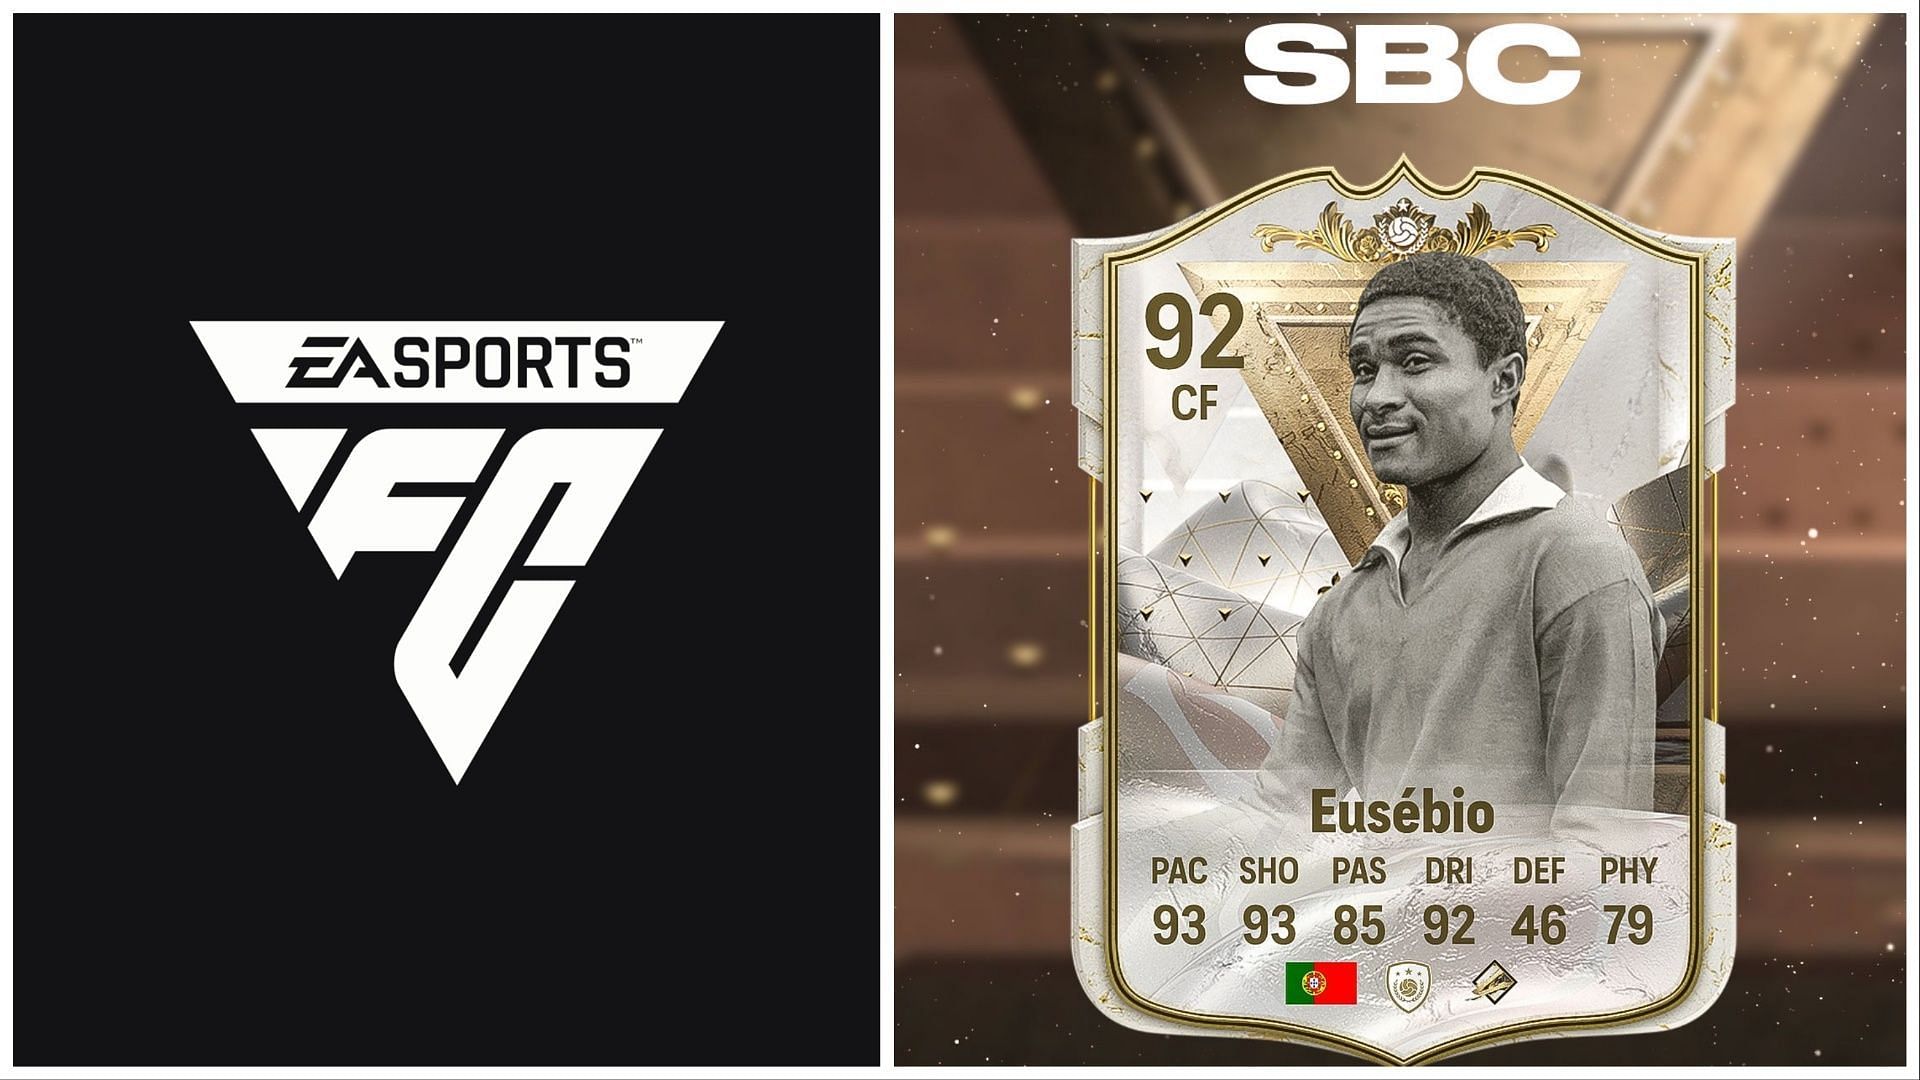 Eusebio SBC has been leaked (Images via EA Sports)